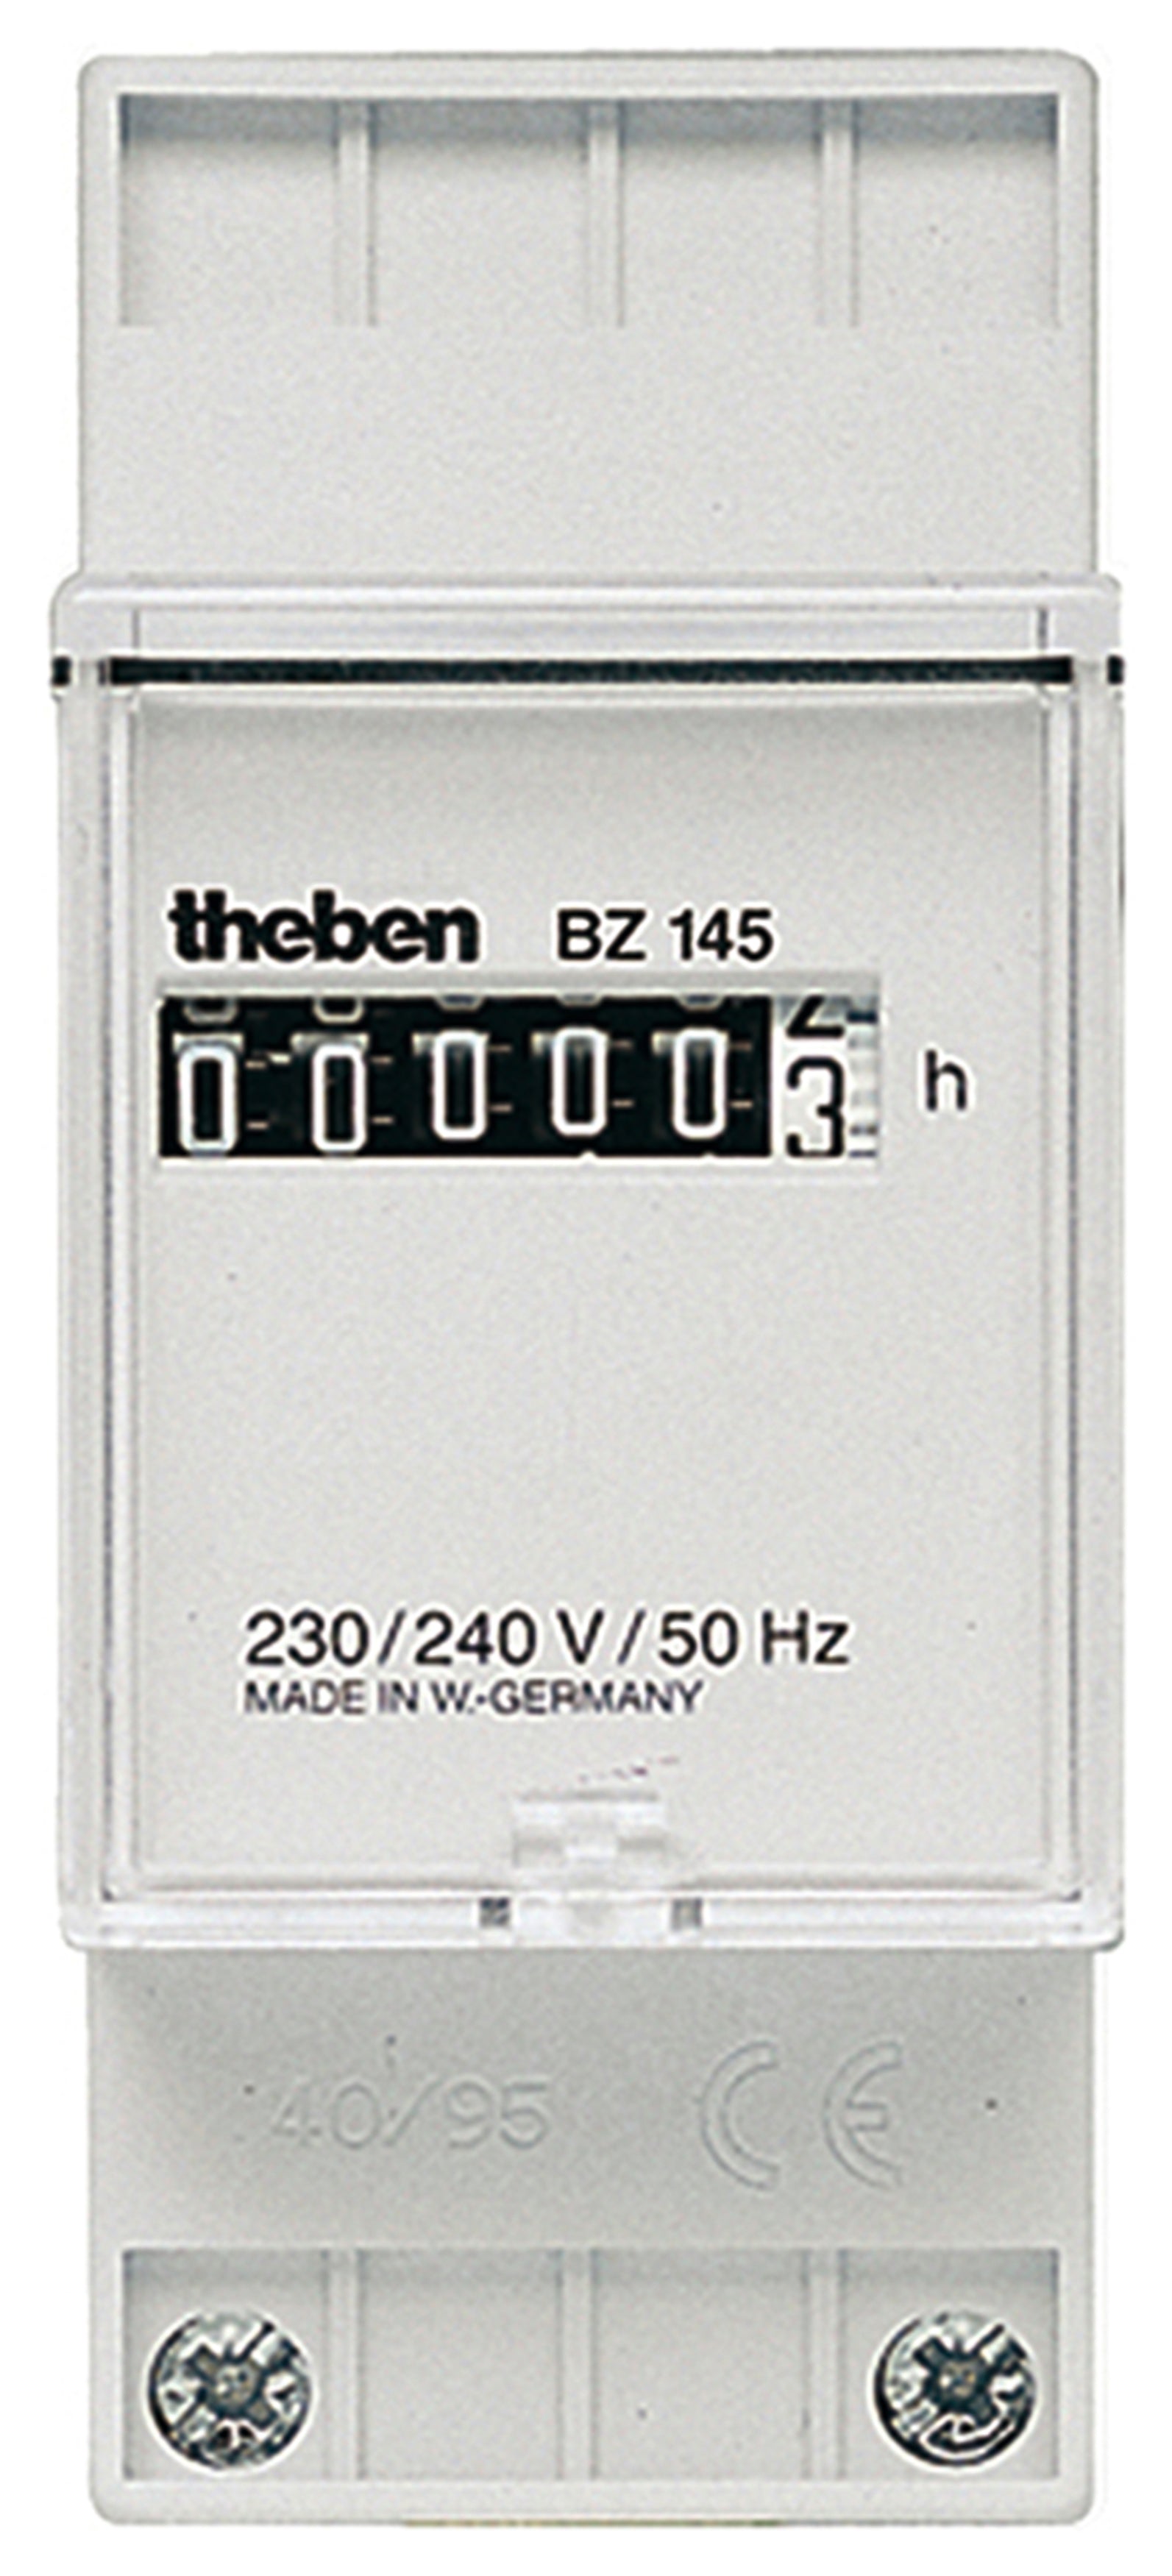 Betriebsstundenzähler mit Synchronmotorantrie, BZ 145, von Theben. 